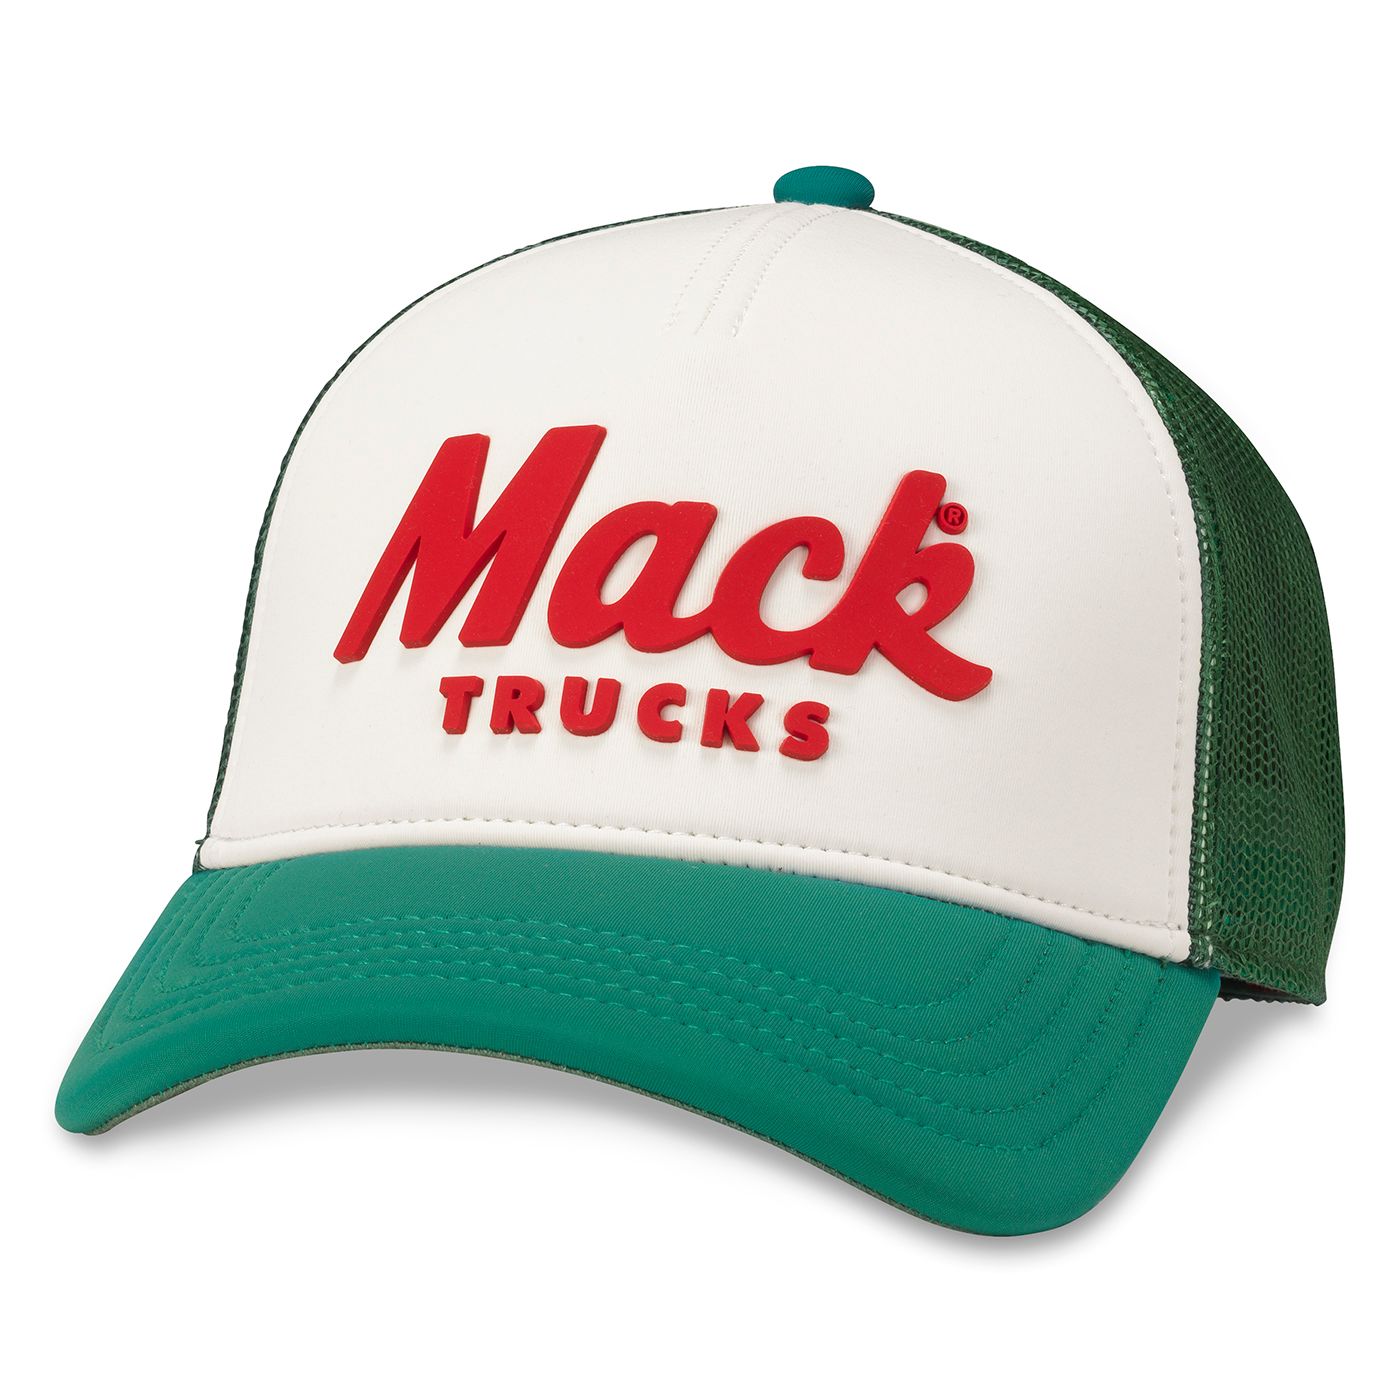 MACK TRUCK - Riptide Valin Trucker Hat